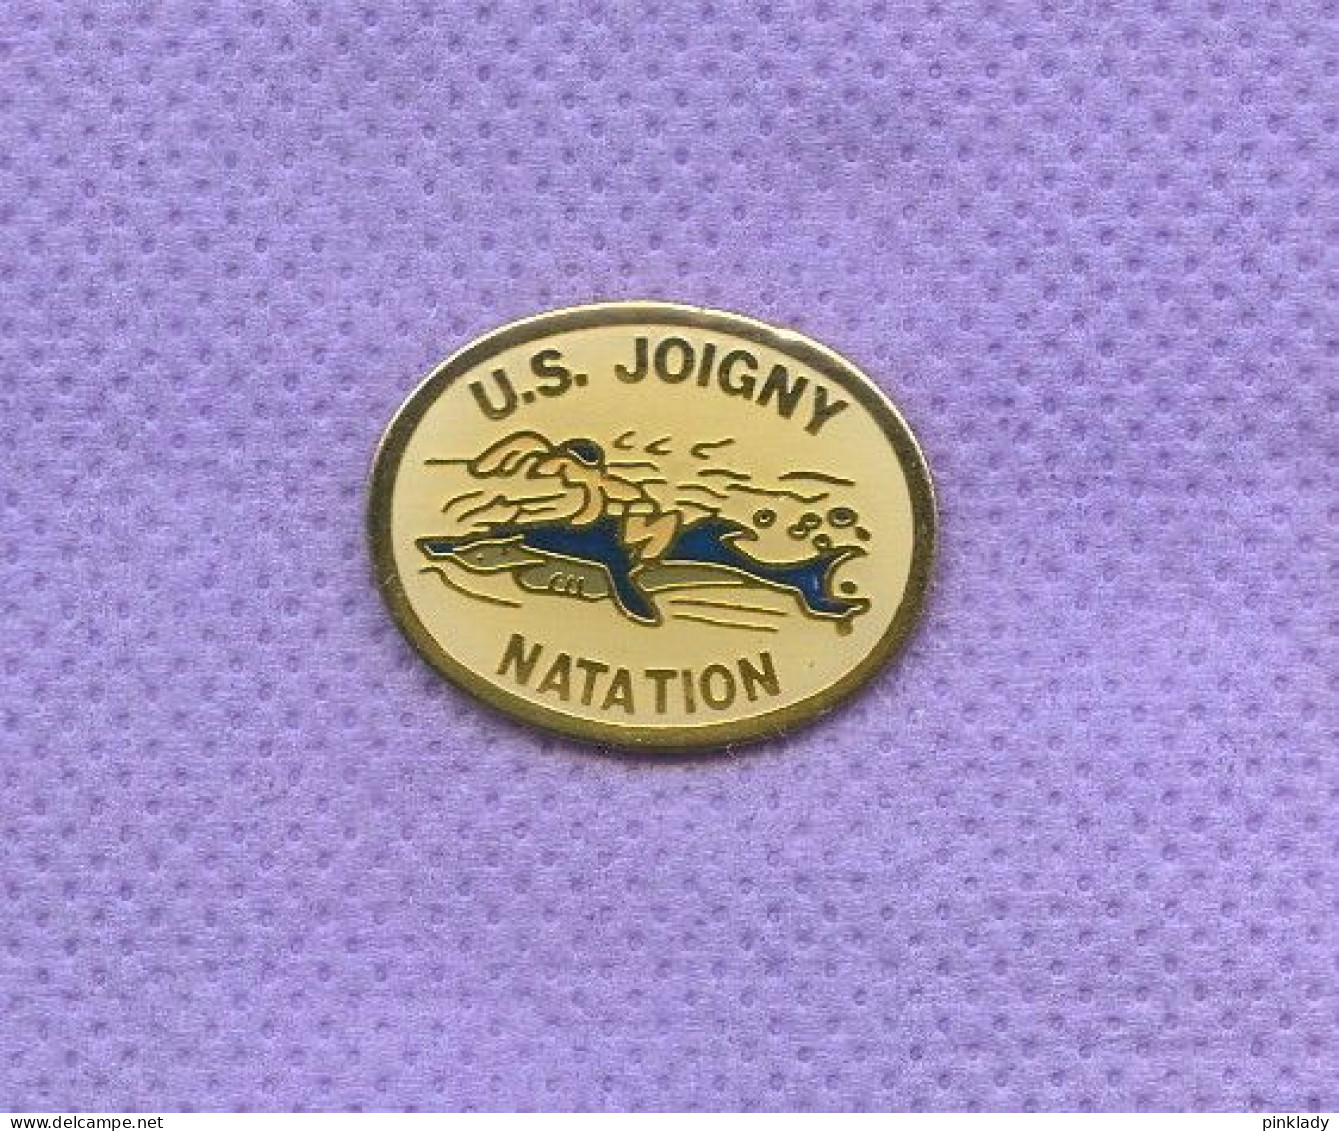 Rare Pins Natation Us Joigny Requin J189 - Natation